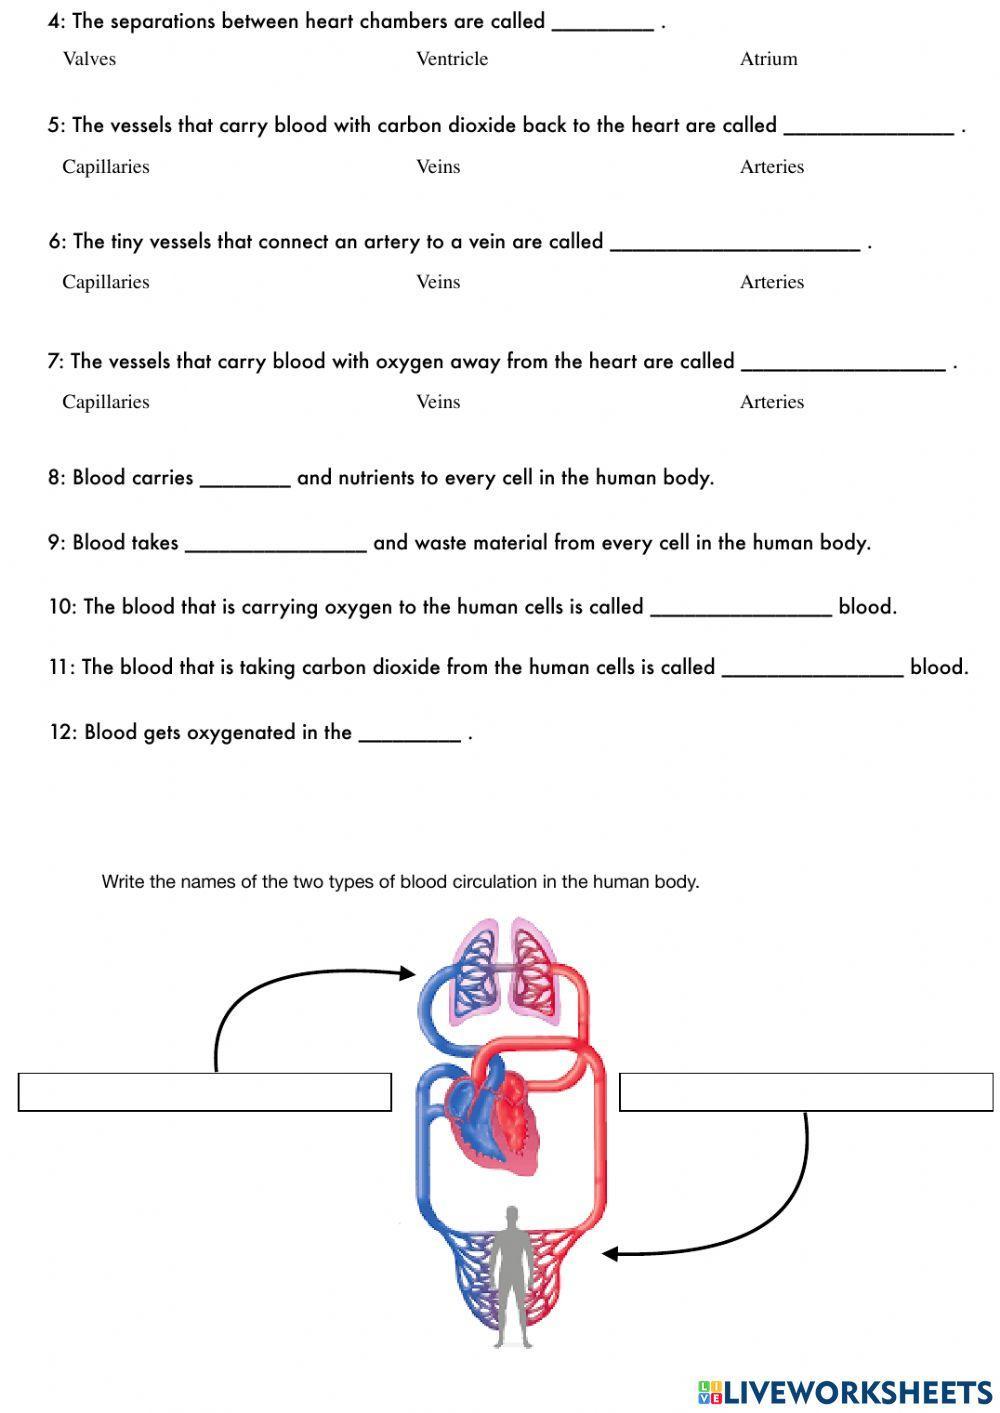 Circulatory system - TEST LW